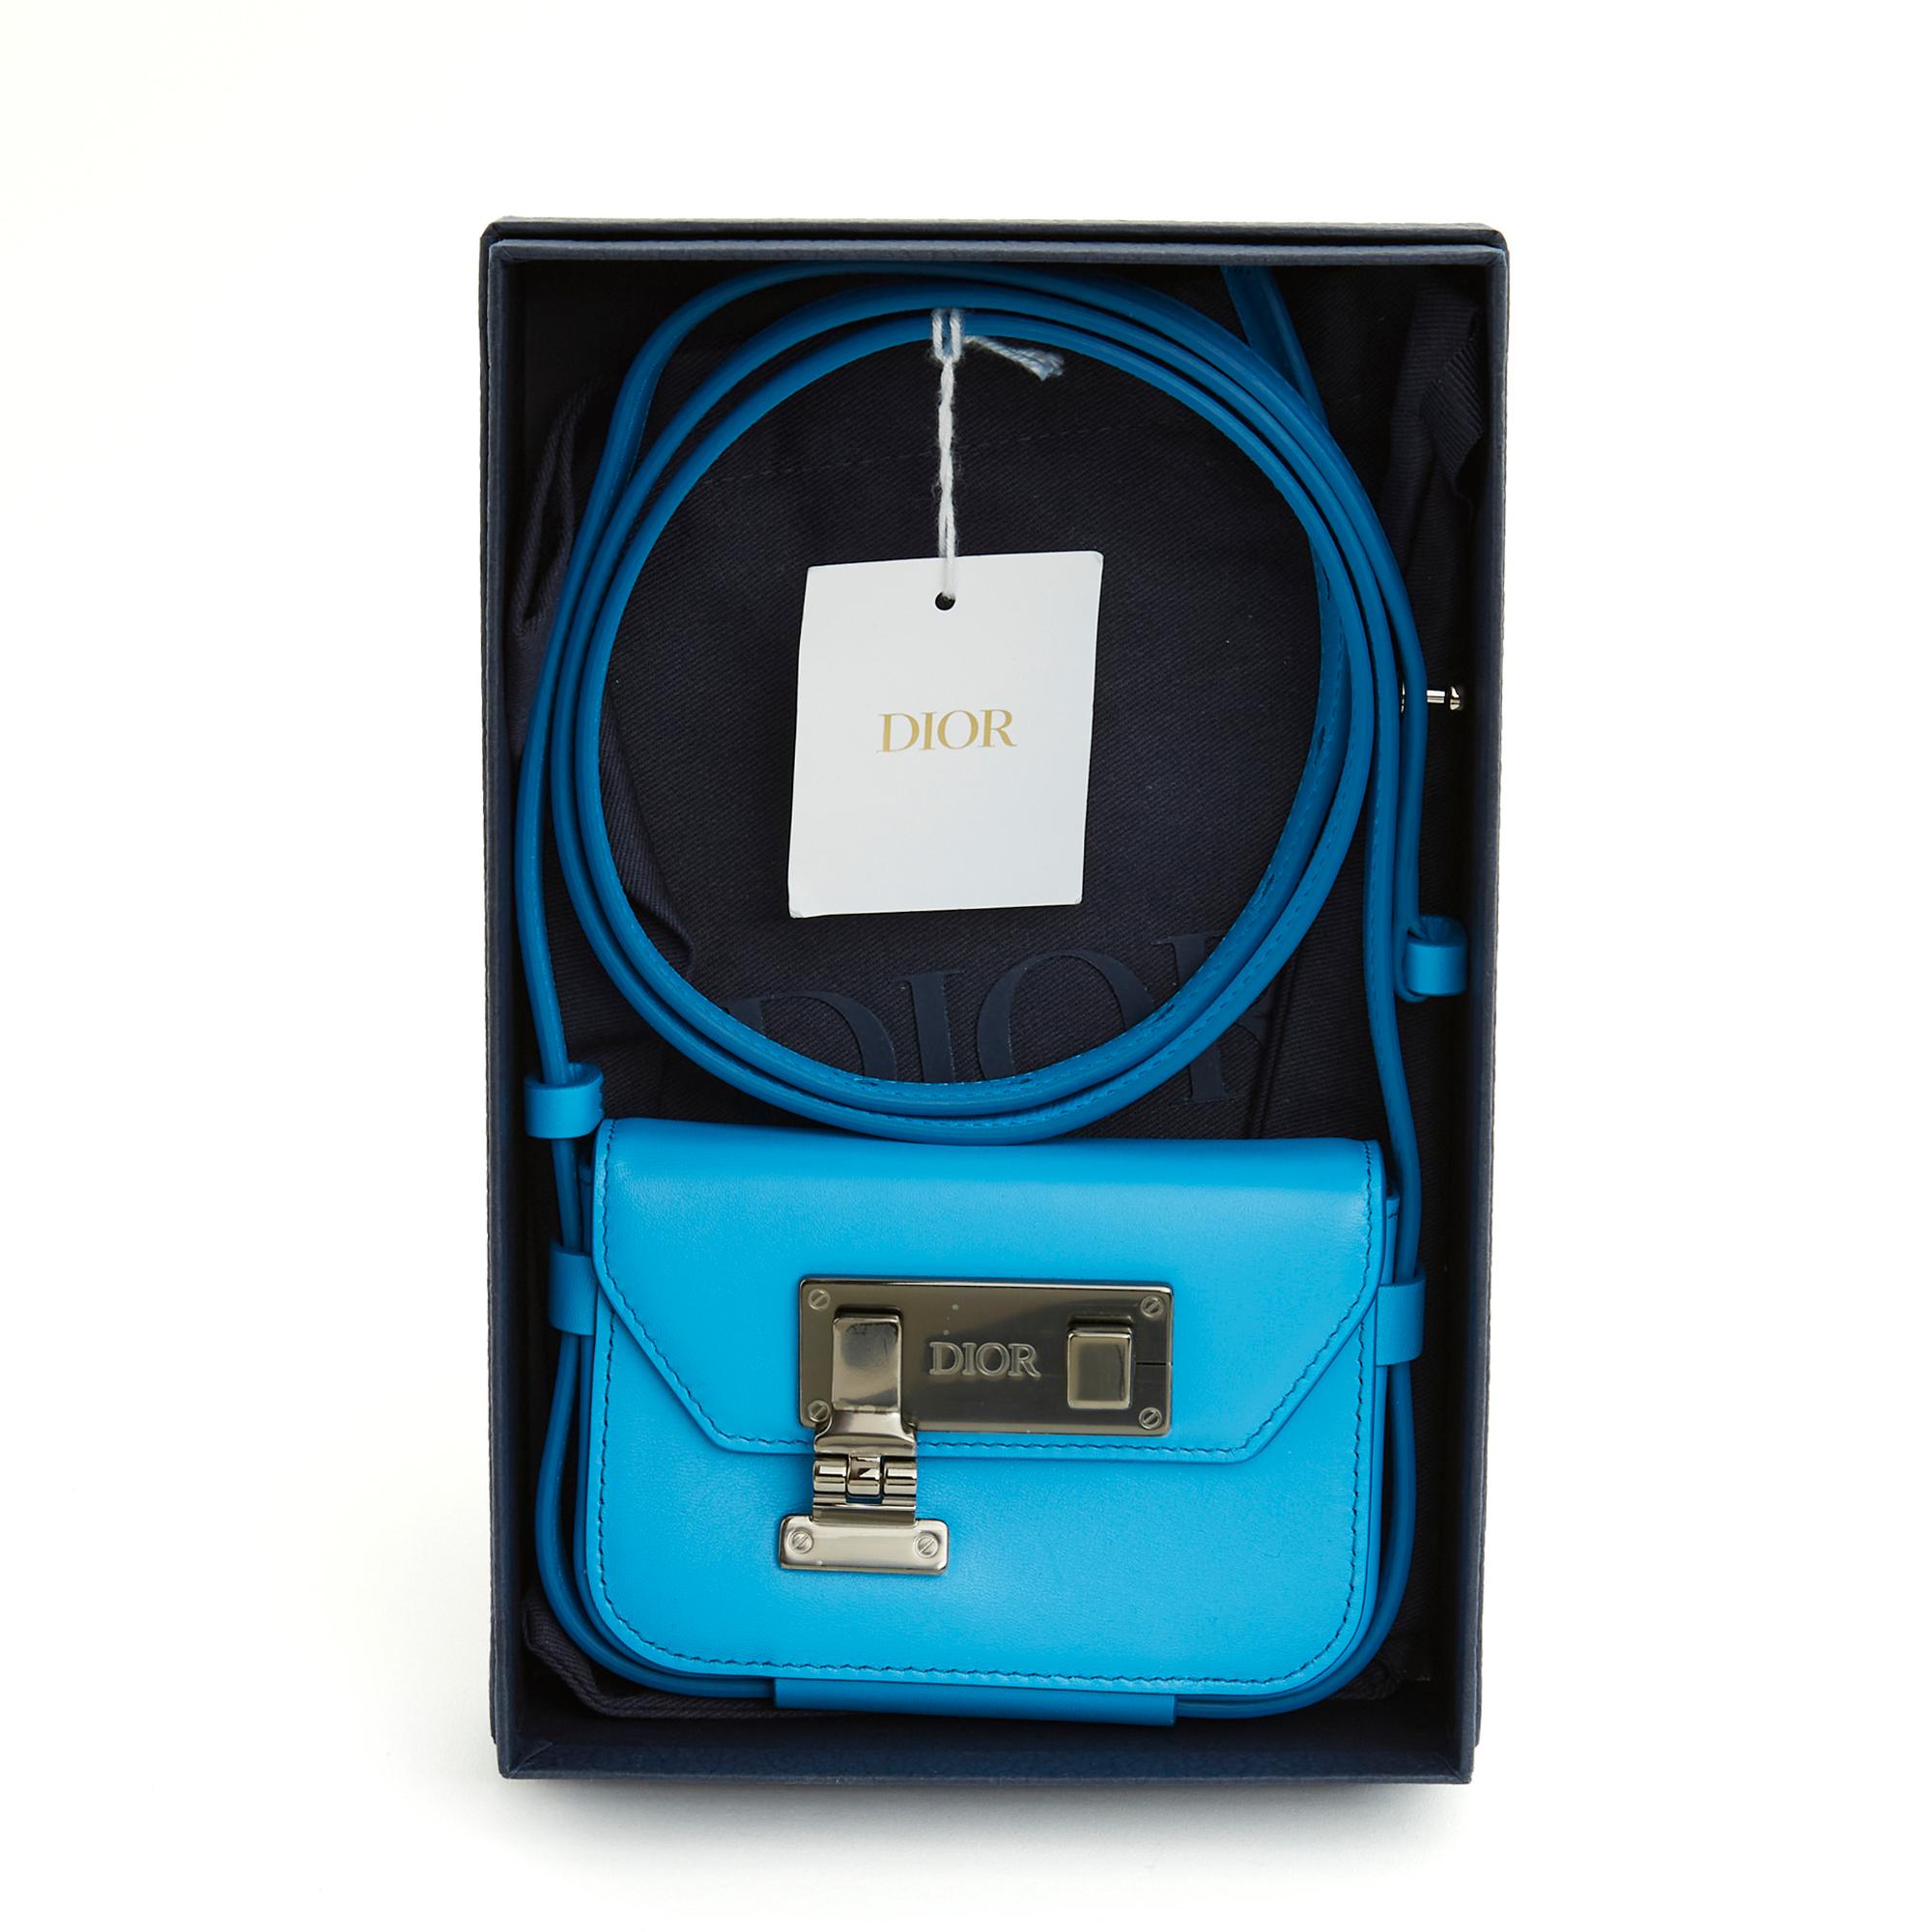 Nano Dior Tasche aus königsblauem Leder, Verschluss aus leicht silbernem Metall (Ruthenium) mit Dior-Logo, Innenseite aus schwarzem Canvas mit aufgesetzter Kartentasche, langer, verstellbarer Schulterriemen zum Tragen am Körper. Breite 11,5 cm x